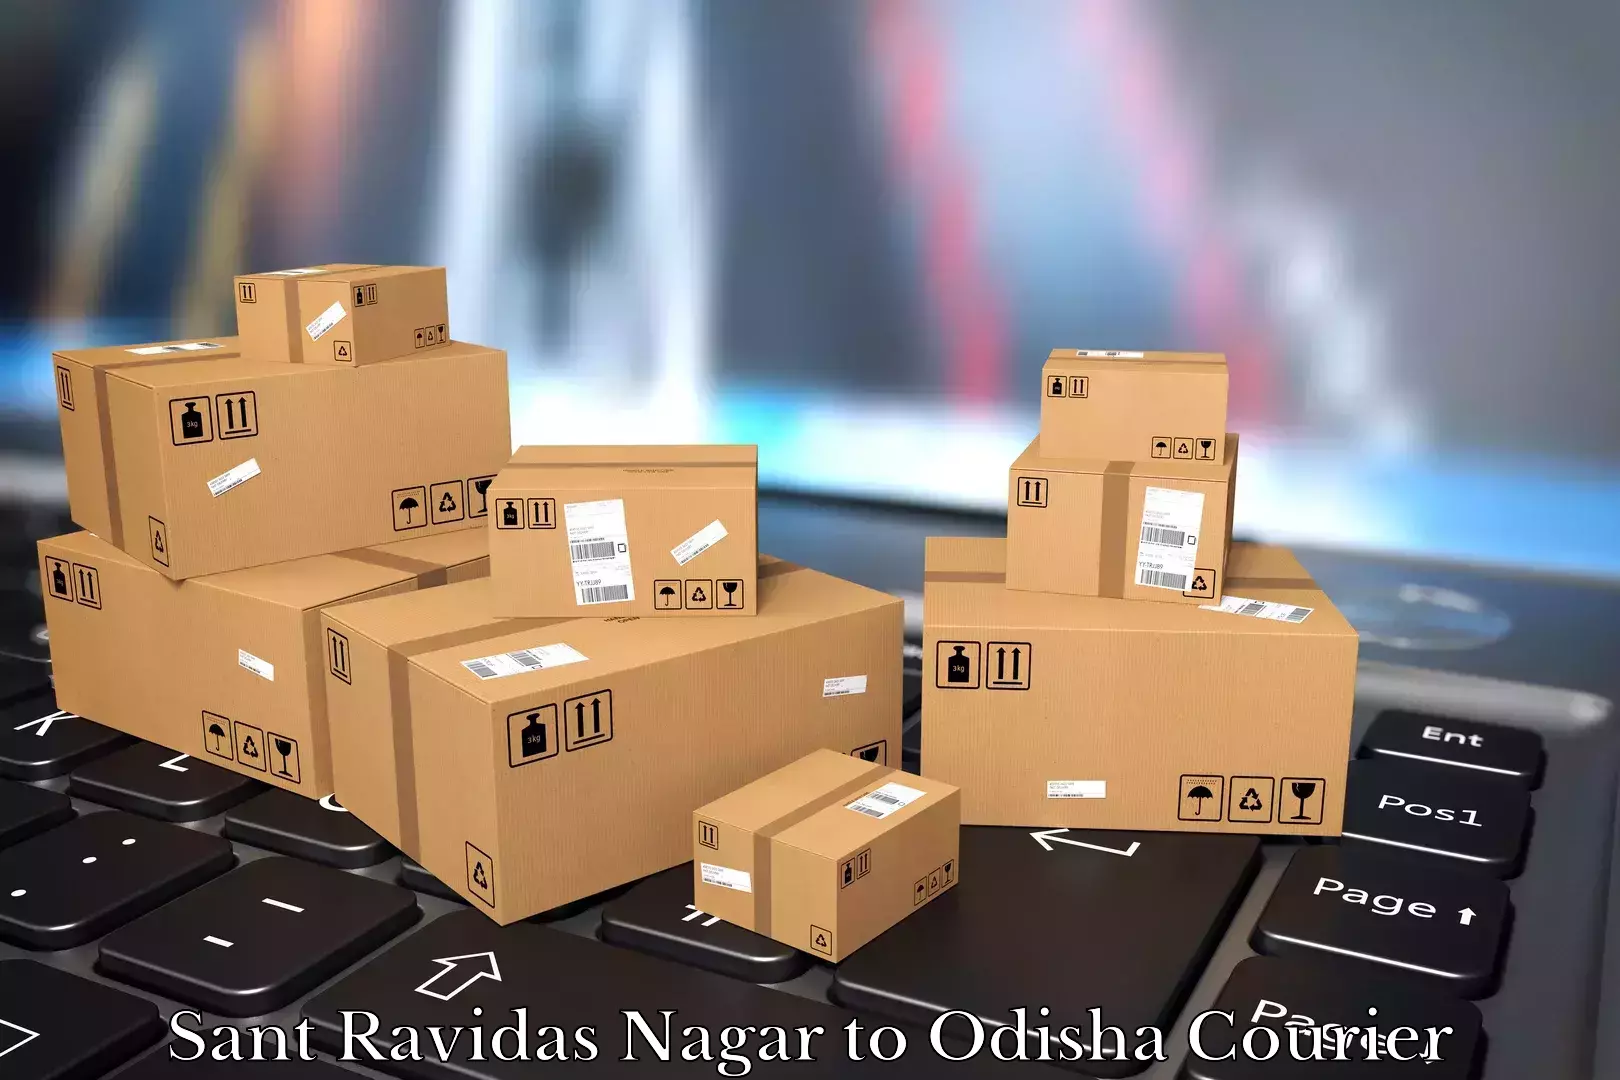 Furniture moving experts Sant Ravidas Nagar to Koraput